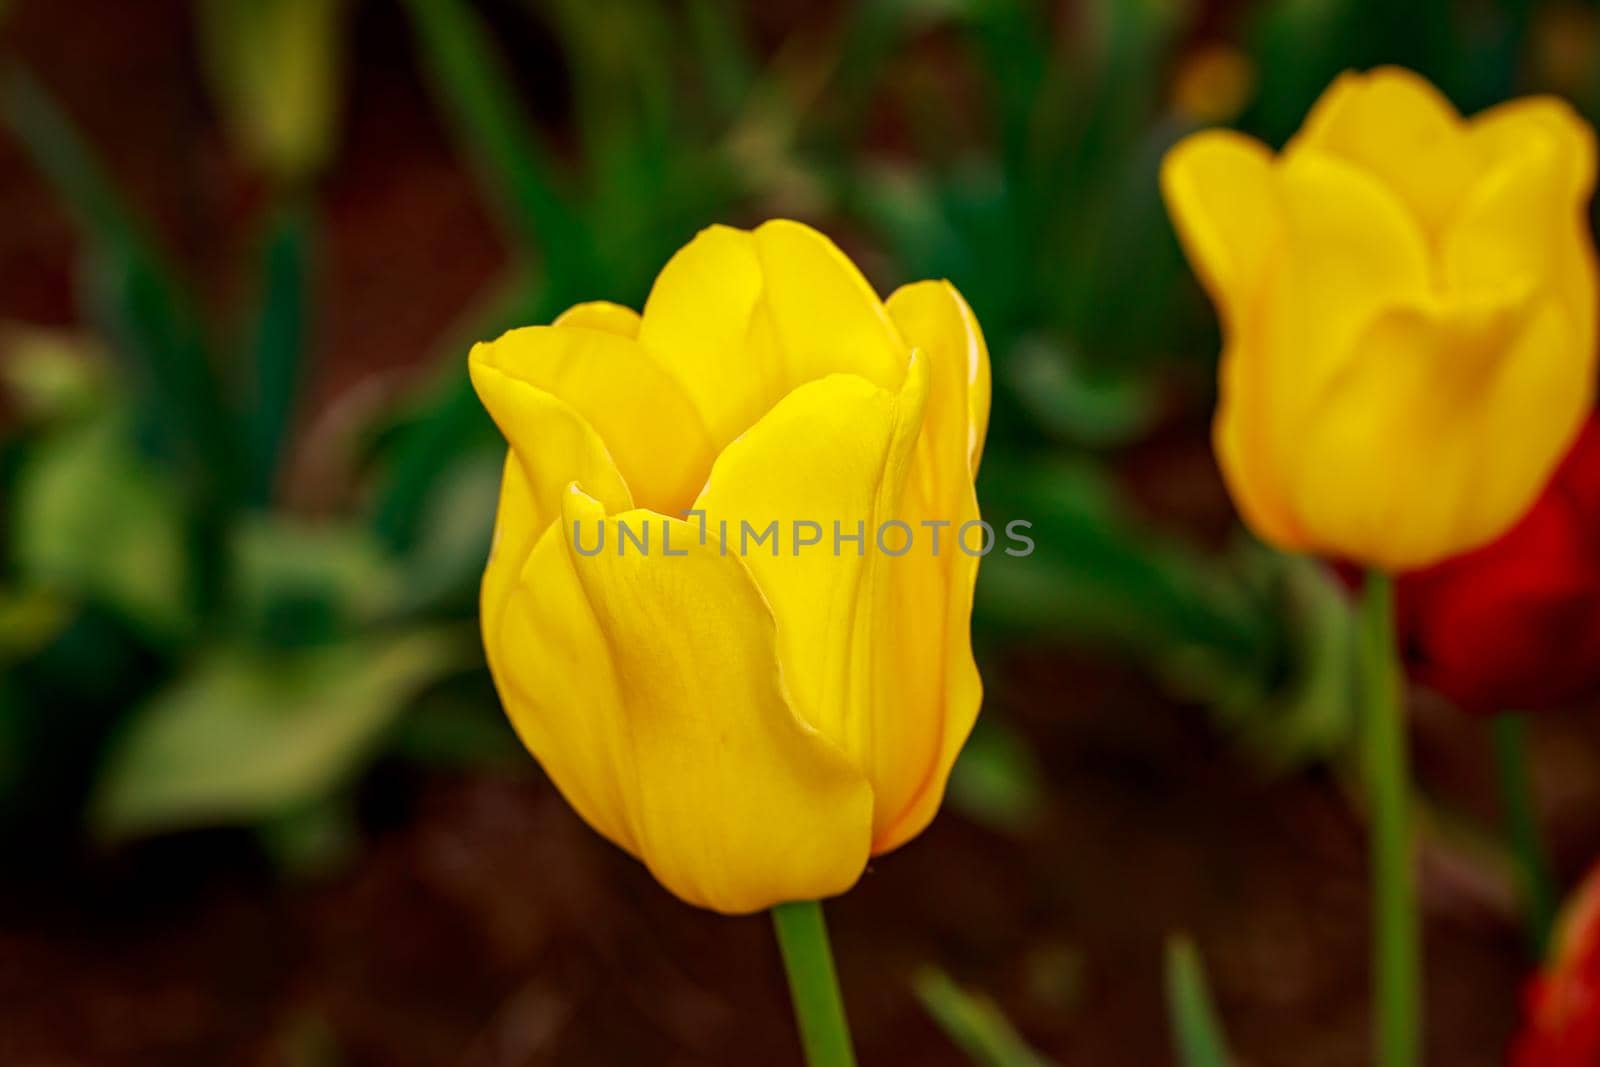 Blooming Tulip Flowers by gepeng